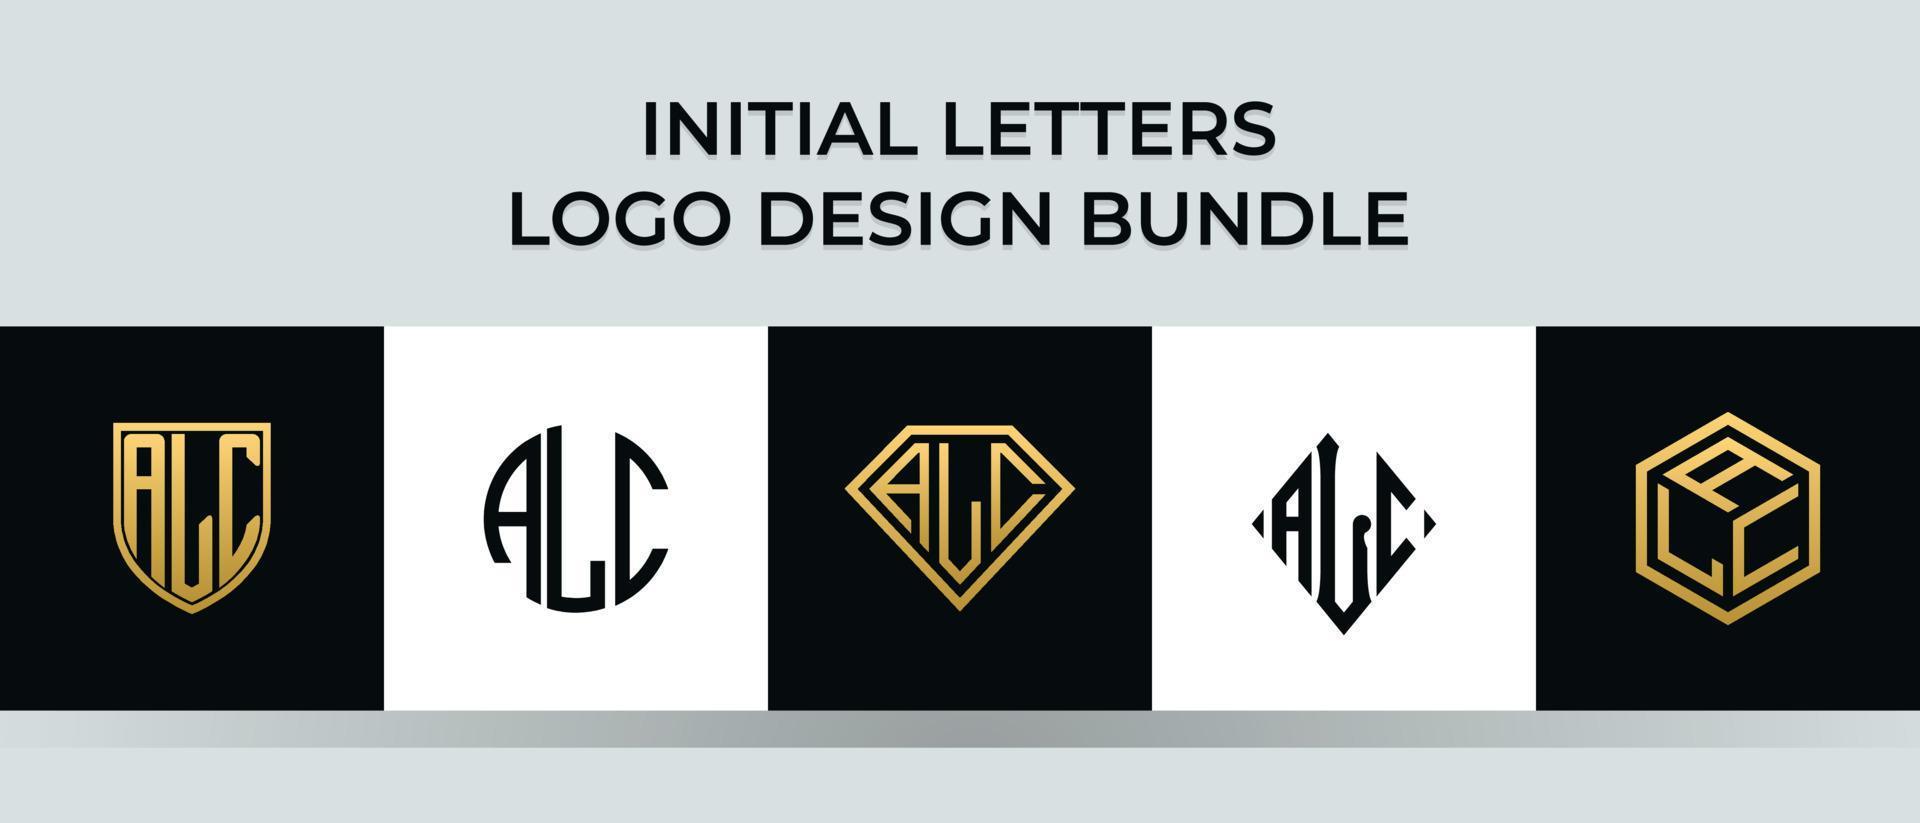 Initial letters ALC logo designs Bundle vector